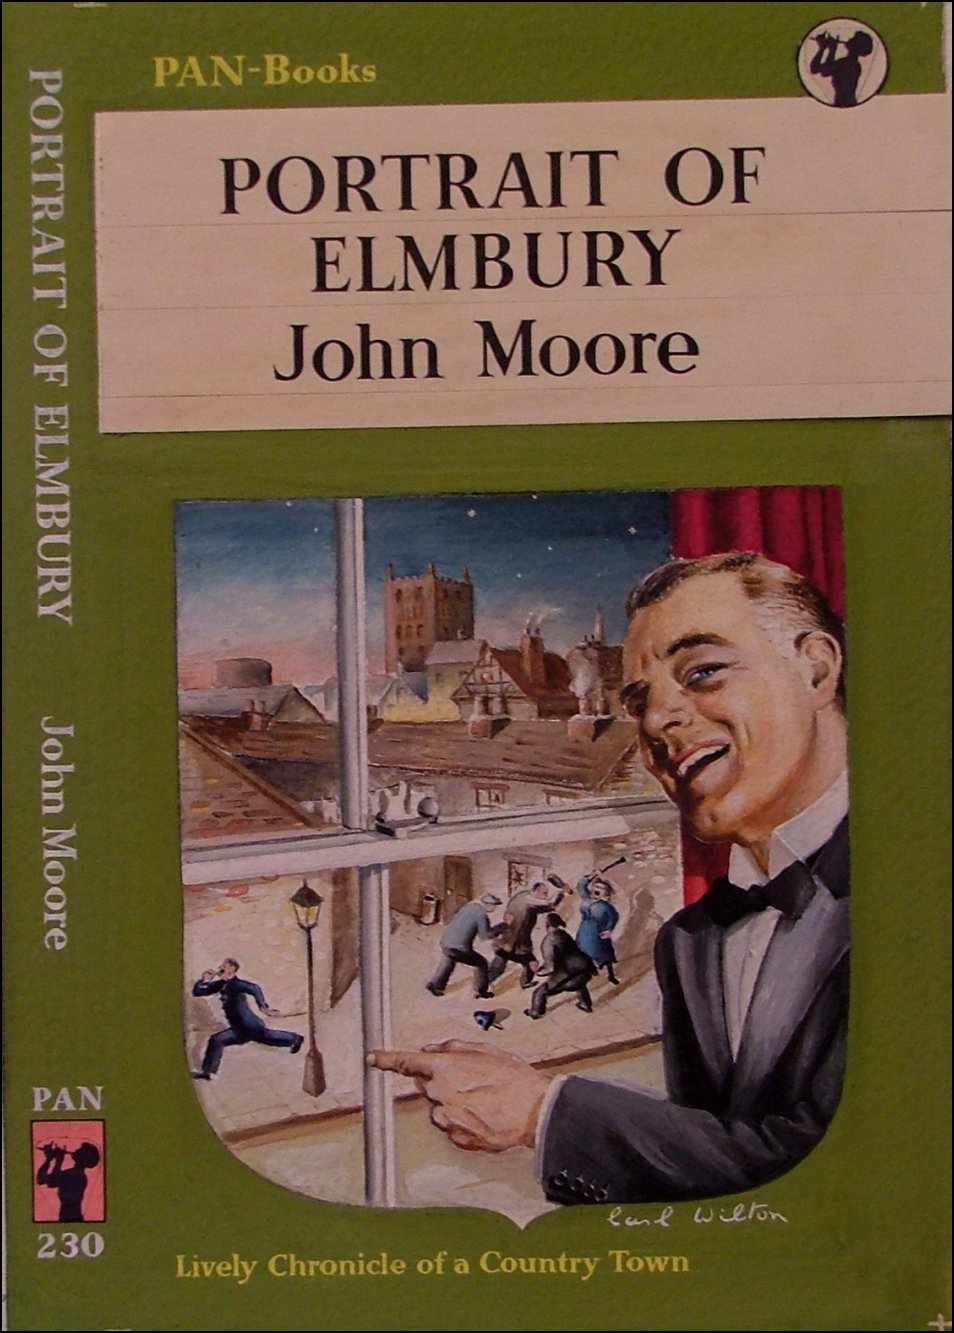 Portrait of Elmbury